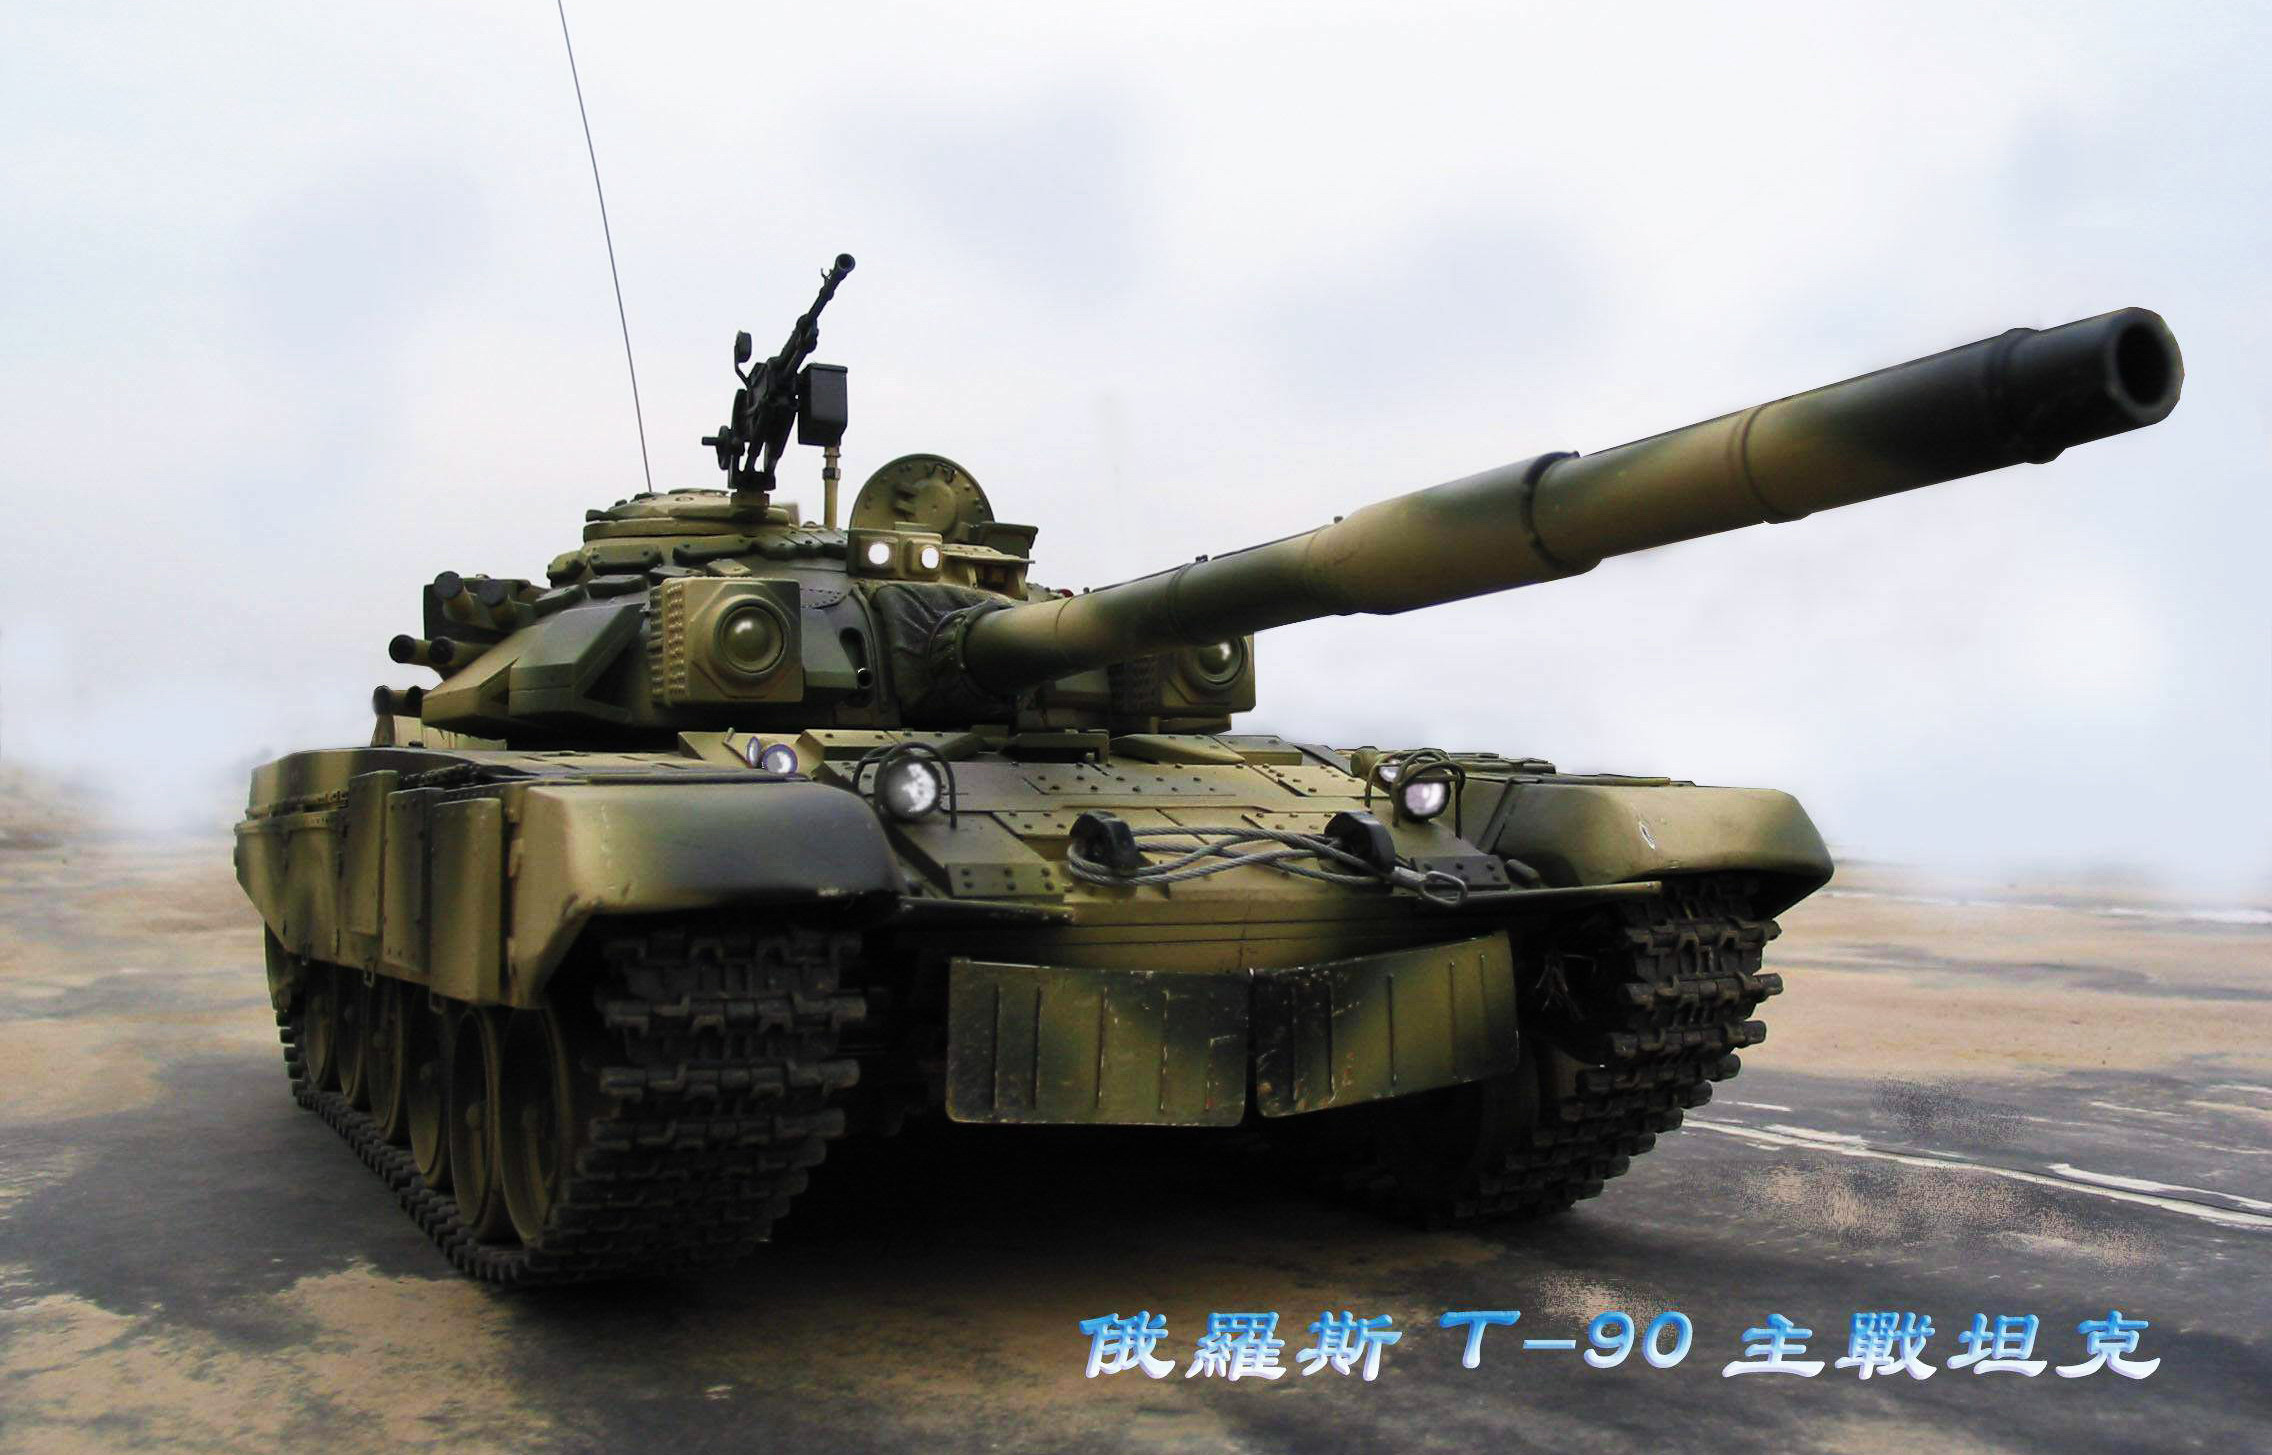 仿真坦克模型   全电动 仿真大炮模型,战车模型制作 作者:模鬼将军 6091 